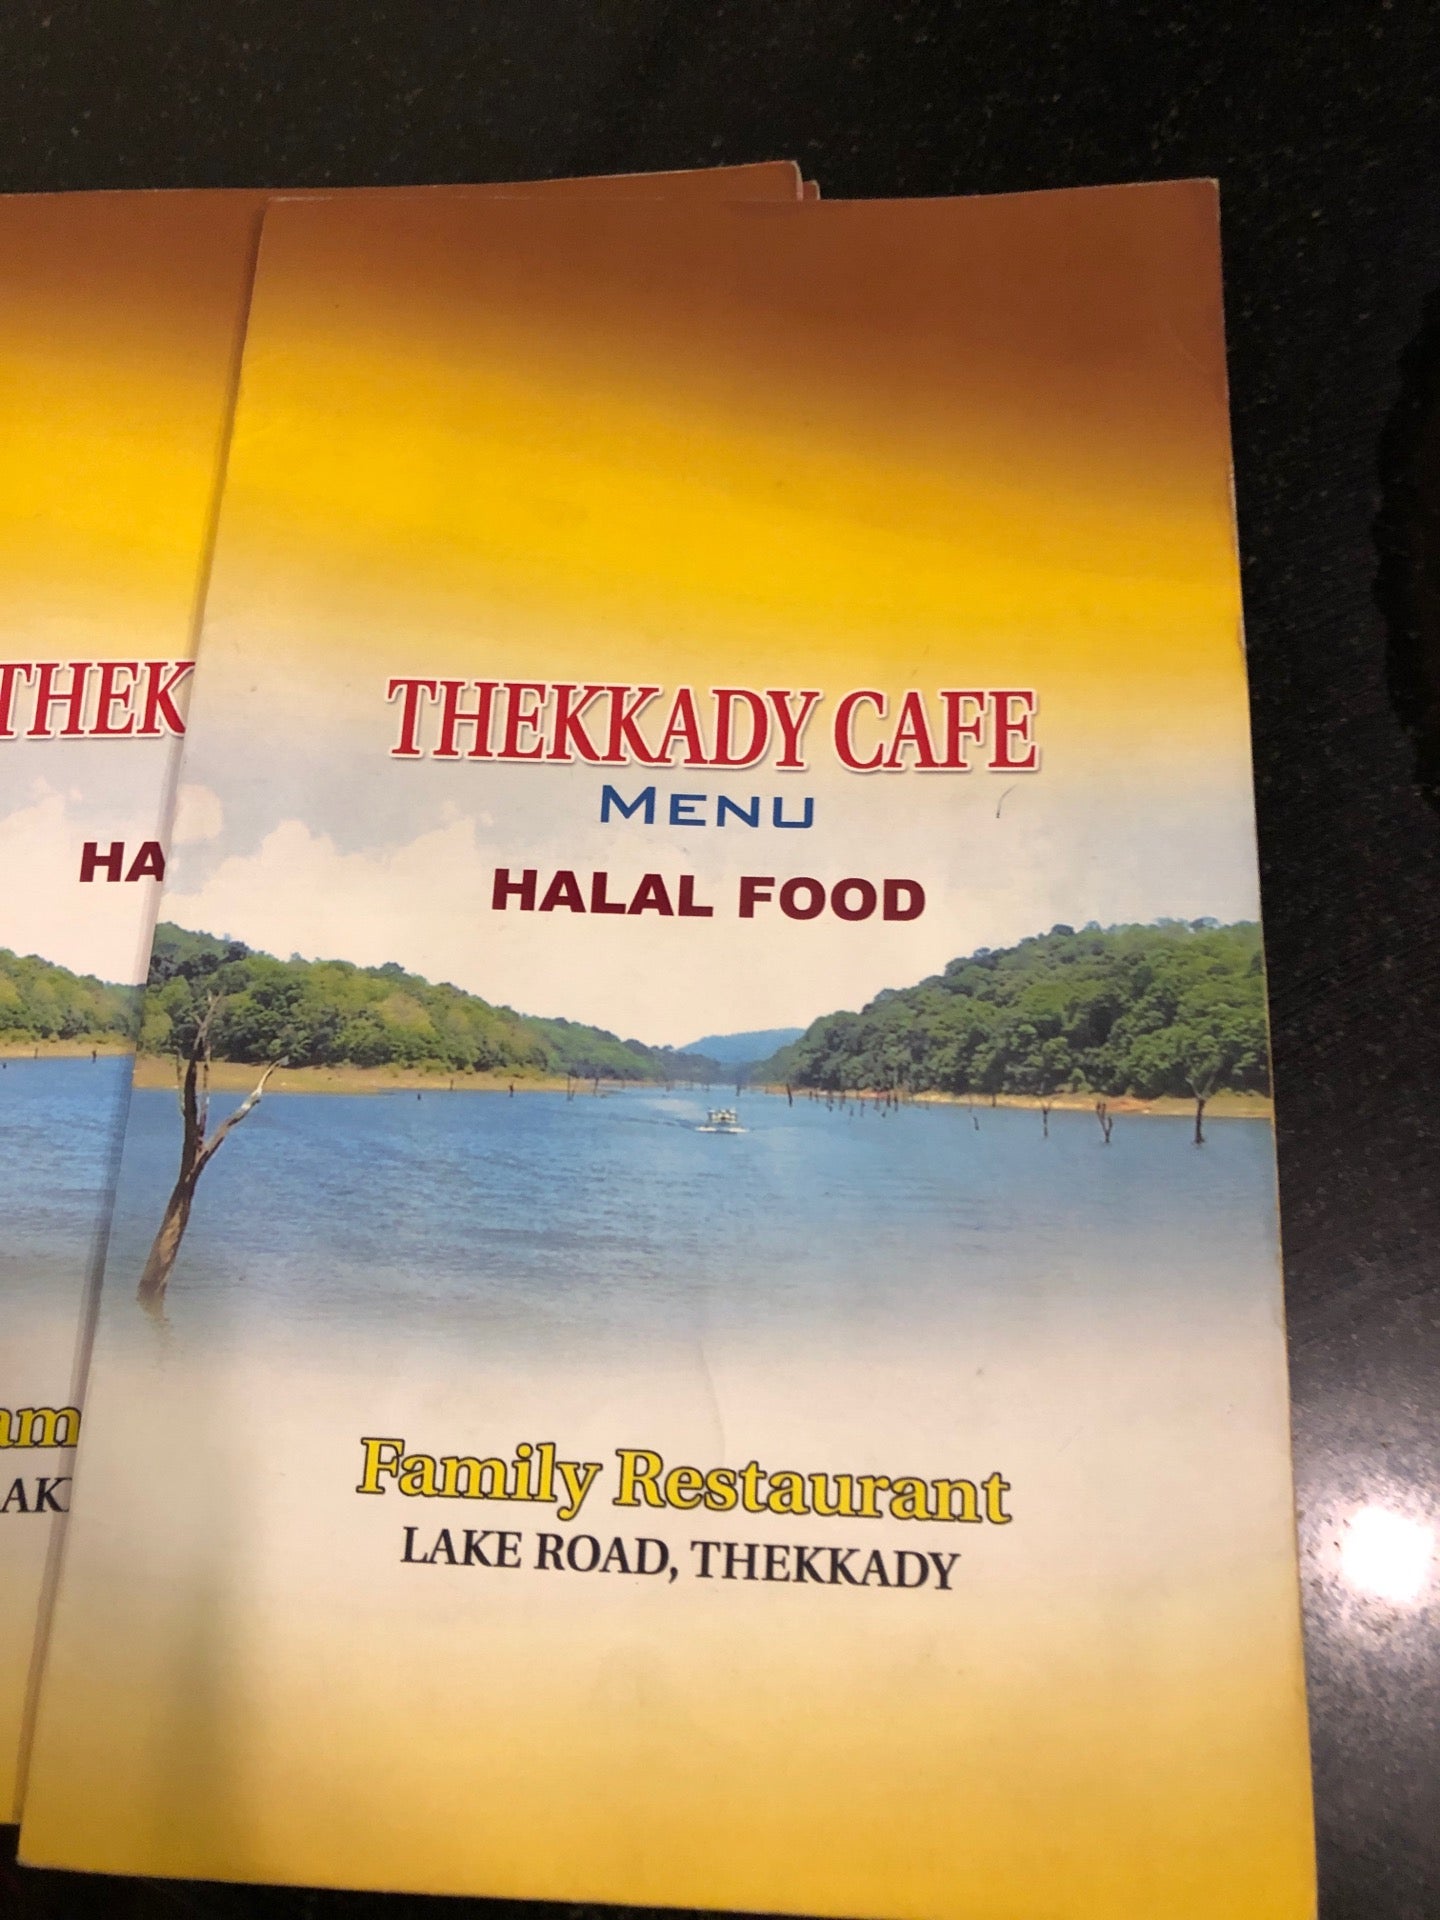 Thekkady Cafe